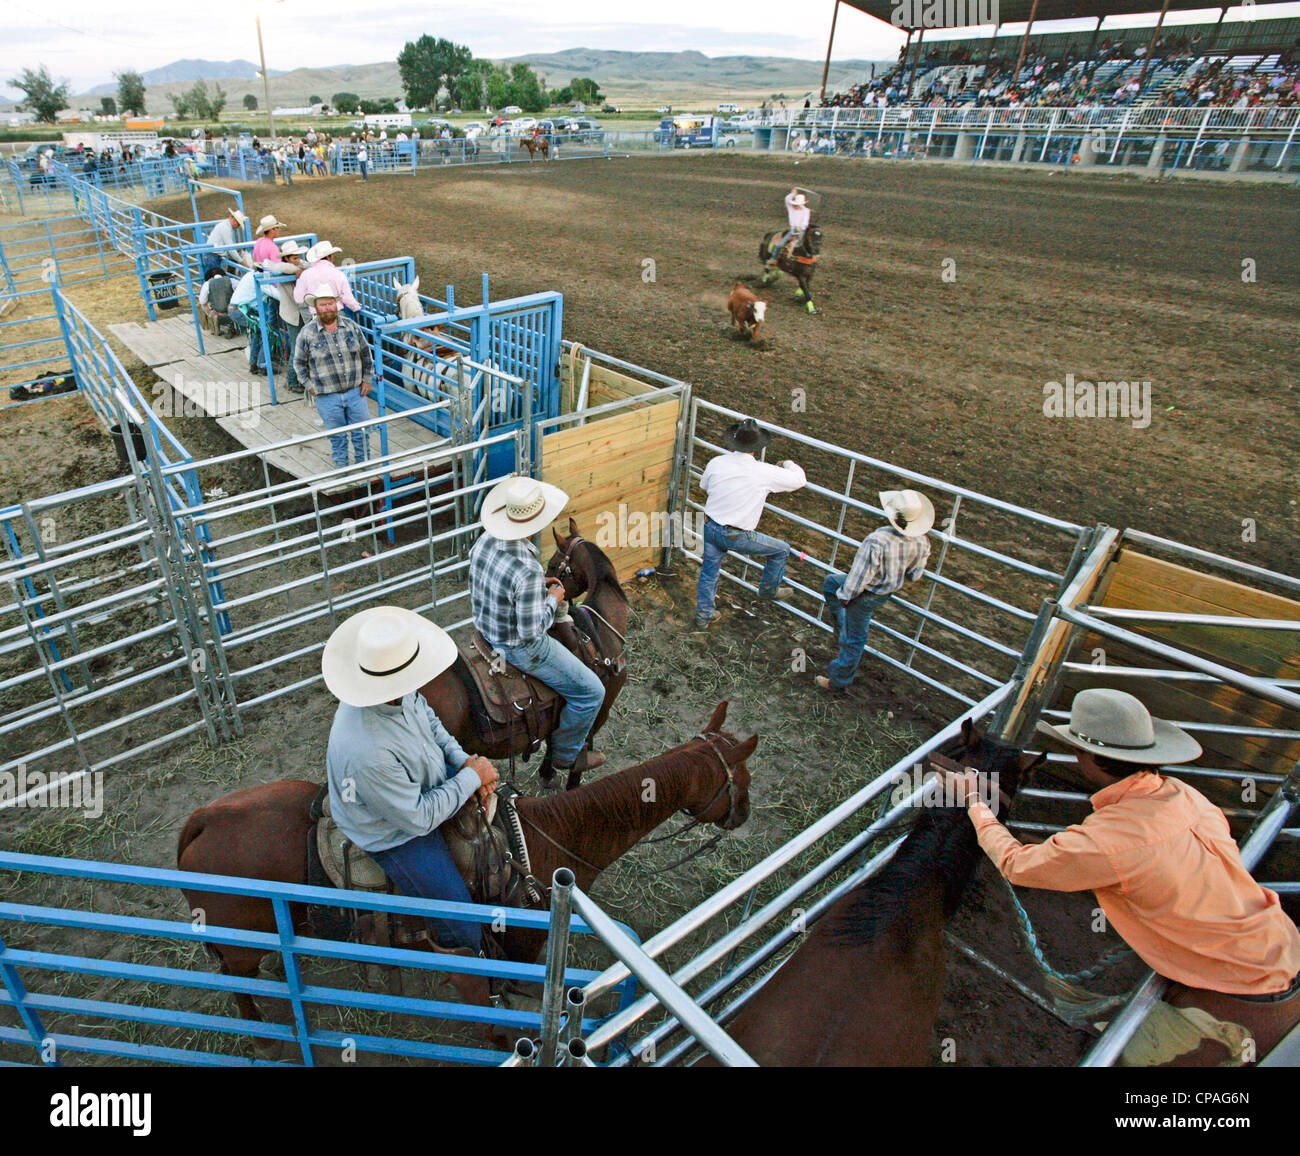 Stati Uniti d'America, Idaho, Fort Hall. Steer roping evento del rodeo tenutasi durante l'annuale Festival Shoshone-Bannock. Foto Stock